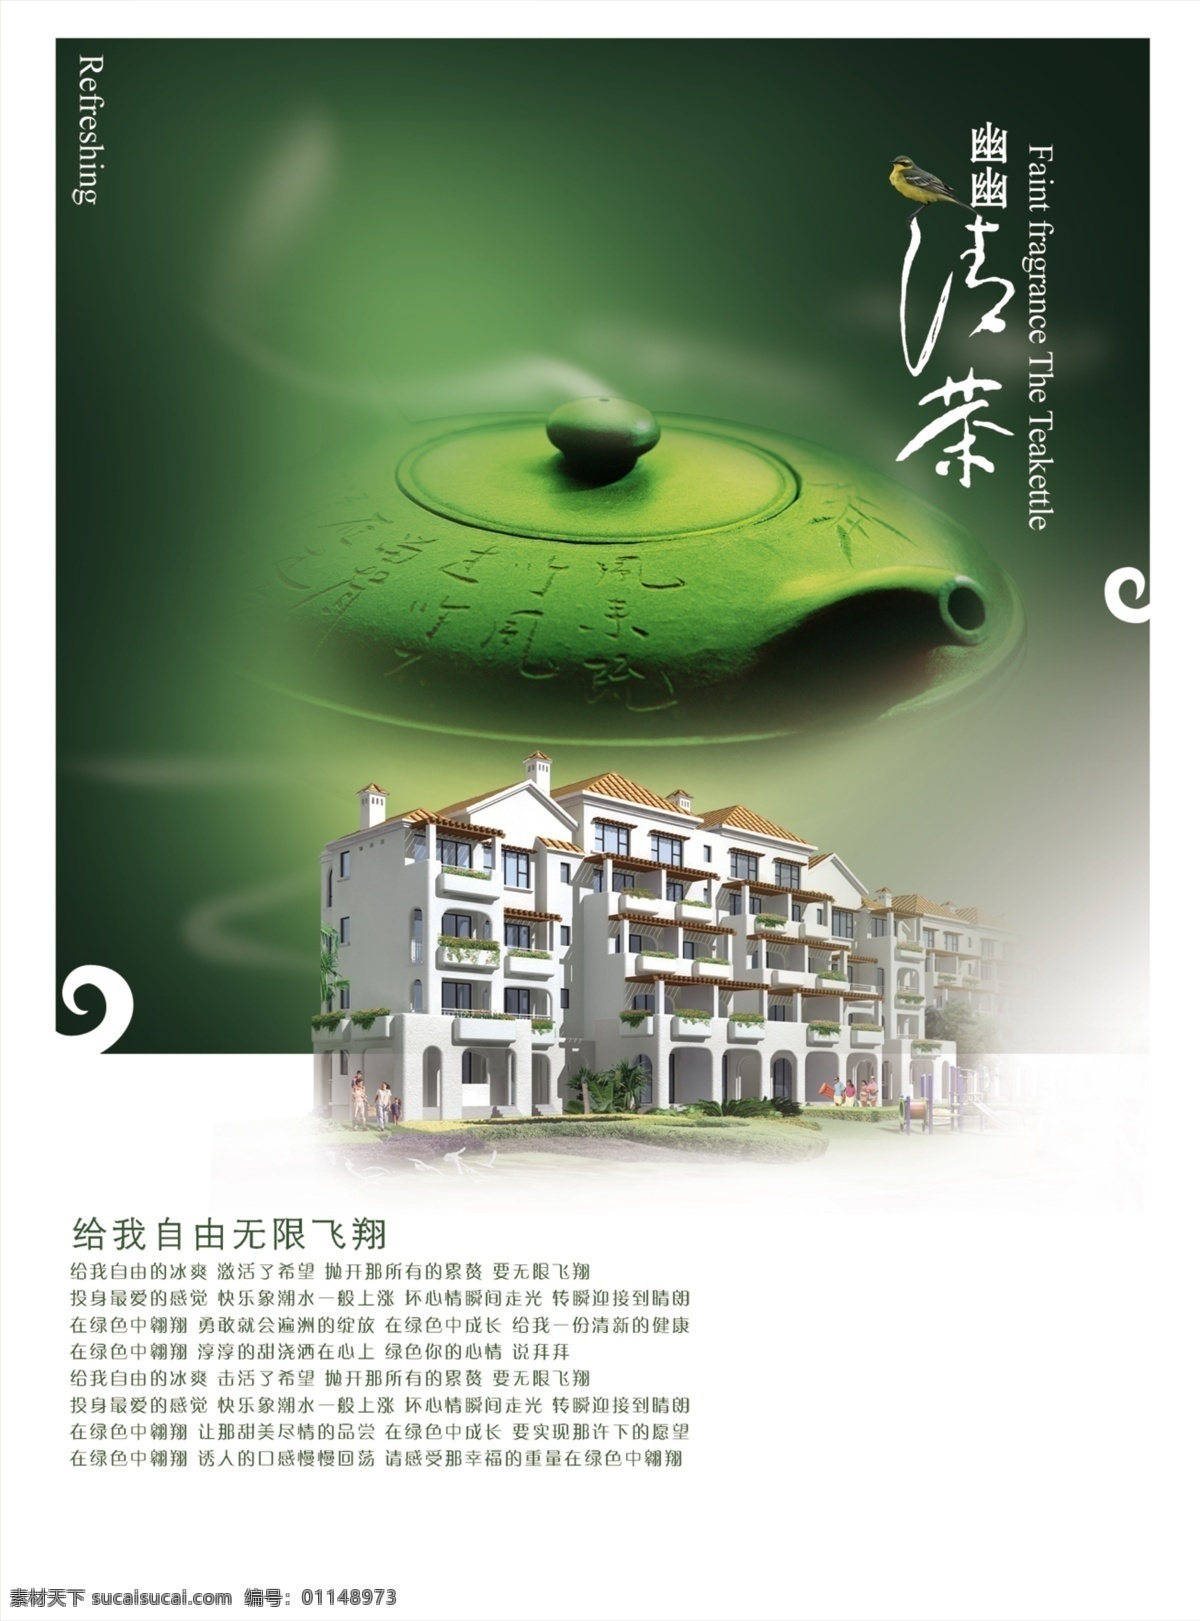 古韵 中国 风 影楼 商业广告 商业图片 艺 流 风尚 水磨 风格 房地产